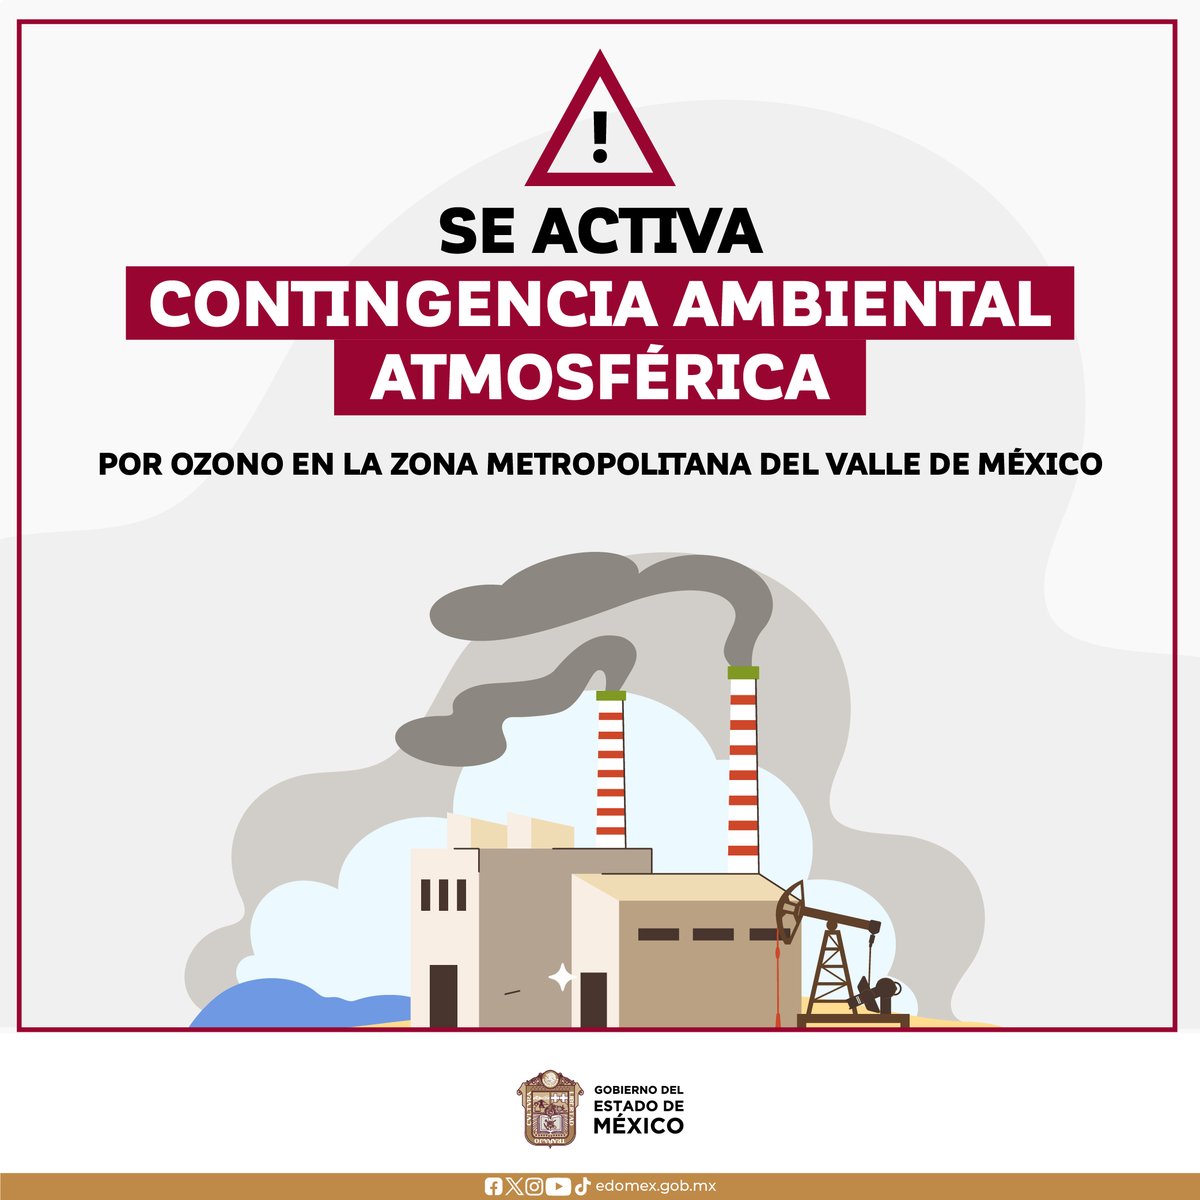 ¡Toma tus precauciones! Se activa Contingencia Ambiental Atmosférica por ozono en la Zona Metropolitana del Valle de México. Consulta información oficial: 💻 rama.edomex.gob.mx/calidaddelaire